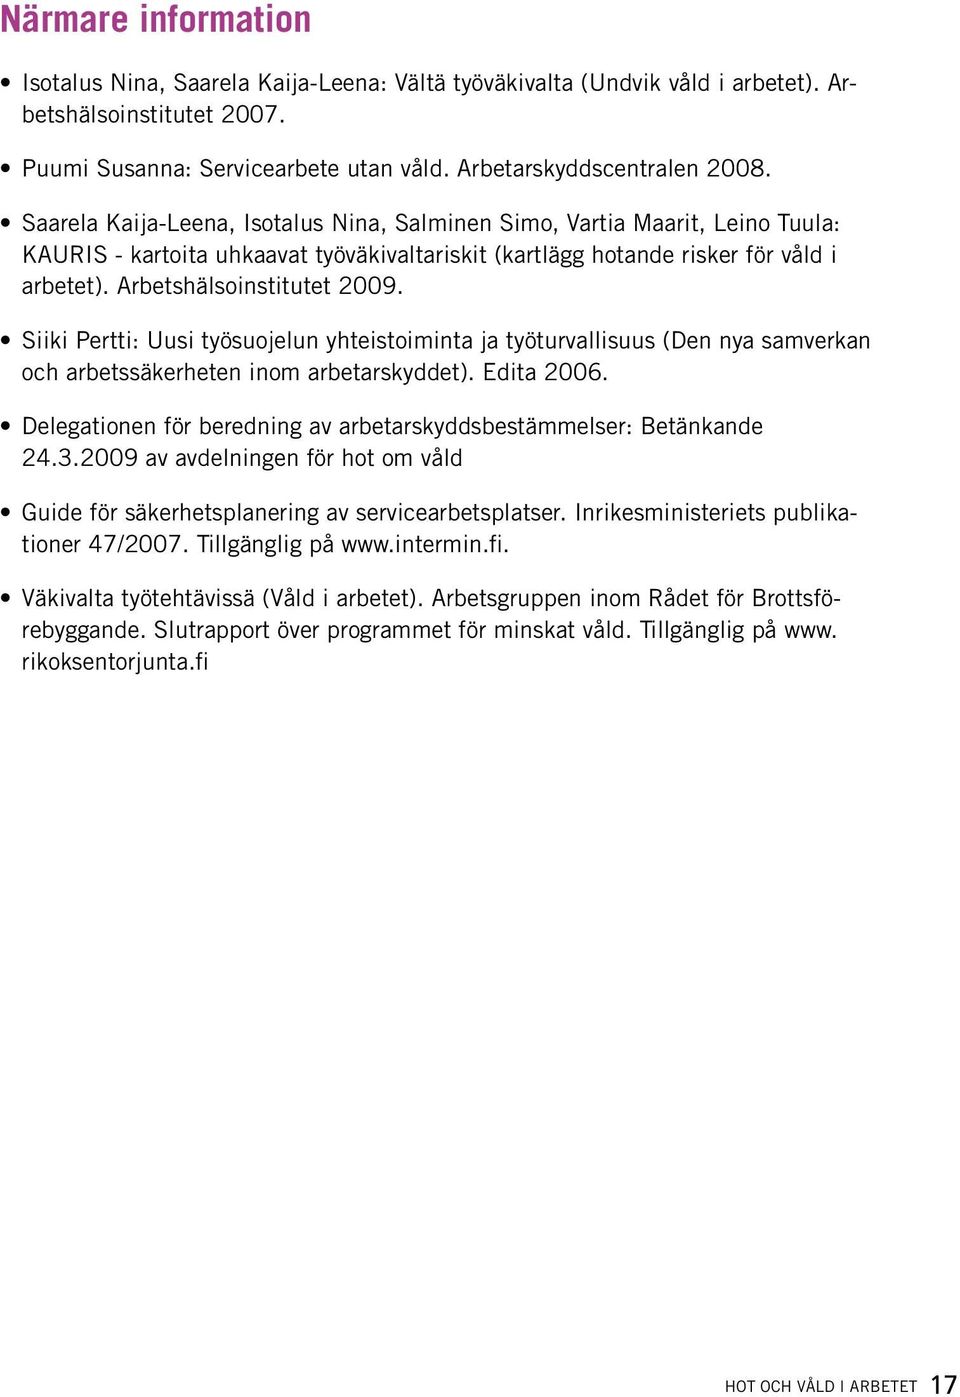 Siiki Pertti: Uusi työsuojelun yhteistoiminta ja työturvallisuus (Den nya samverkan och arbetssäkerheten inom arbetarskyddet). Edita 2006.